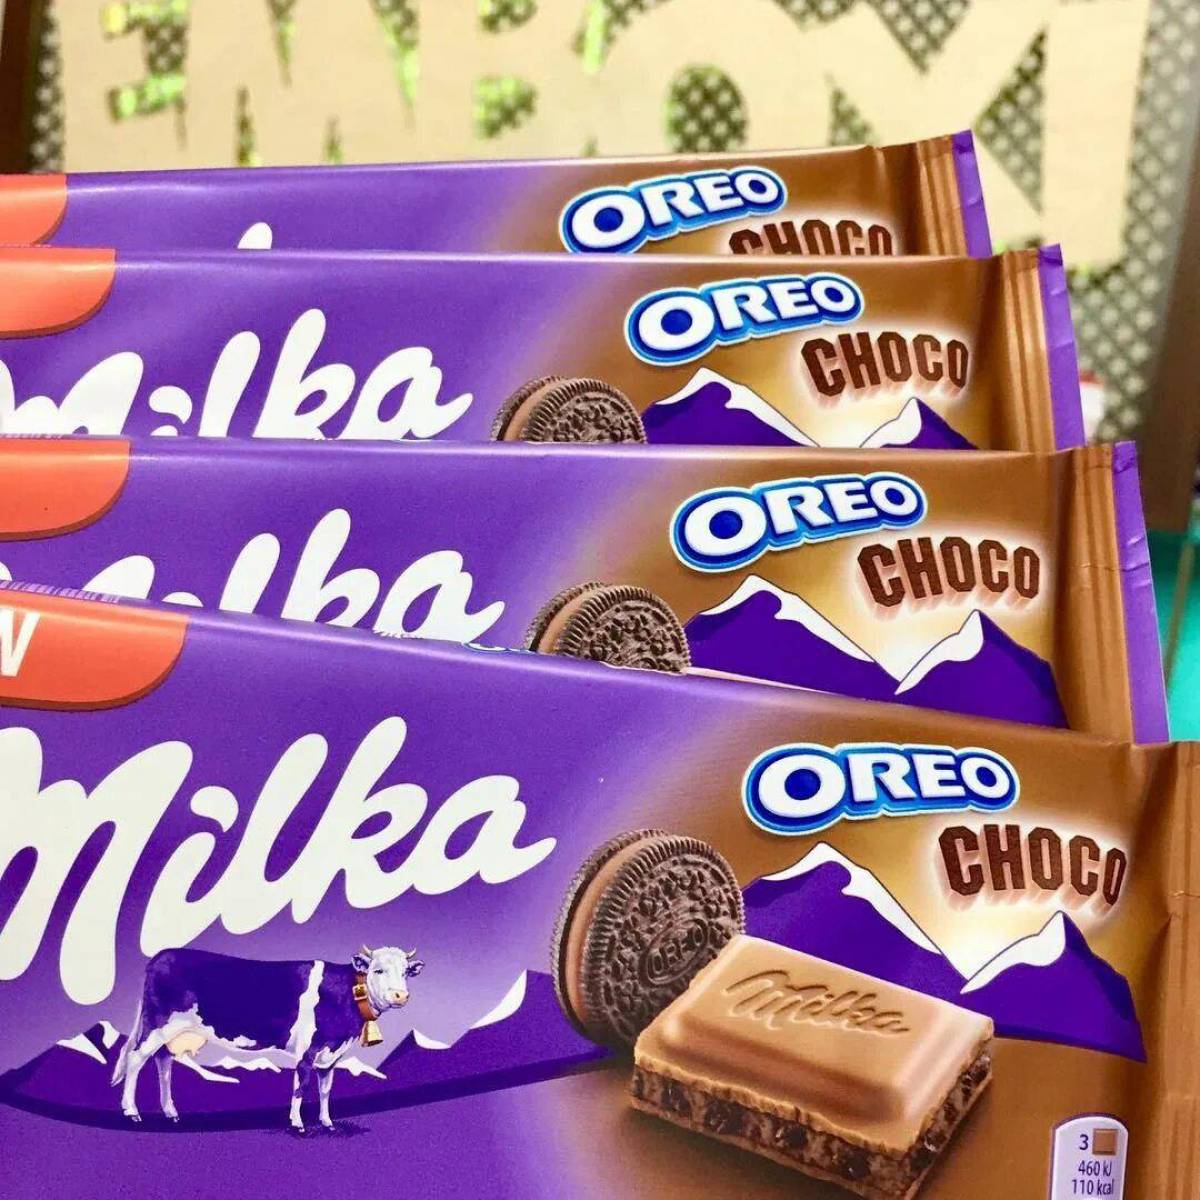 Шоколад Милка. Мтлаа шоколад. Шоколад "Milka". Шоколад в упаковке Милка. Милка вики